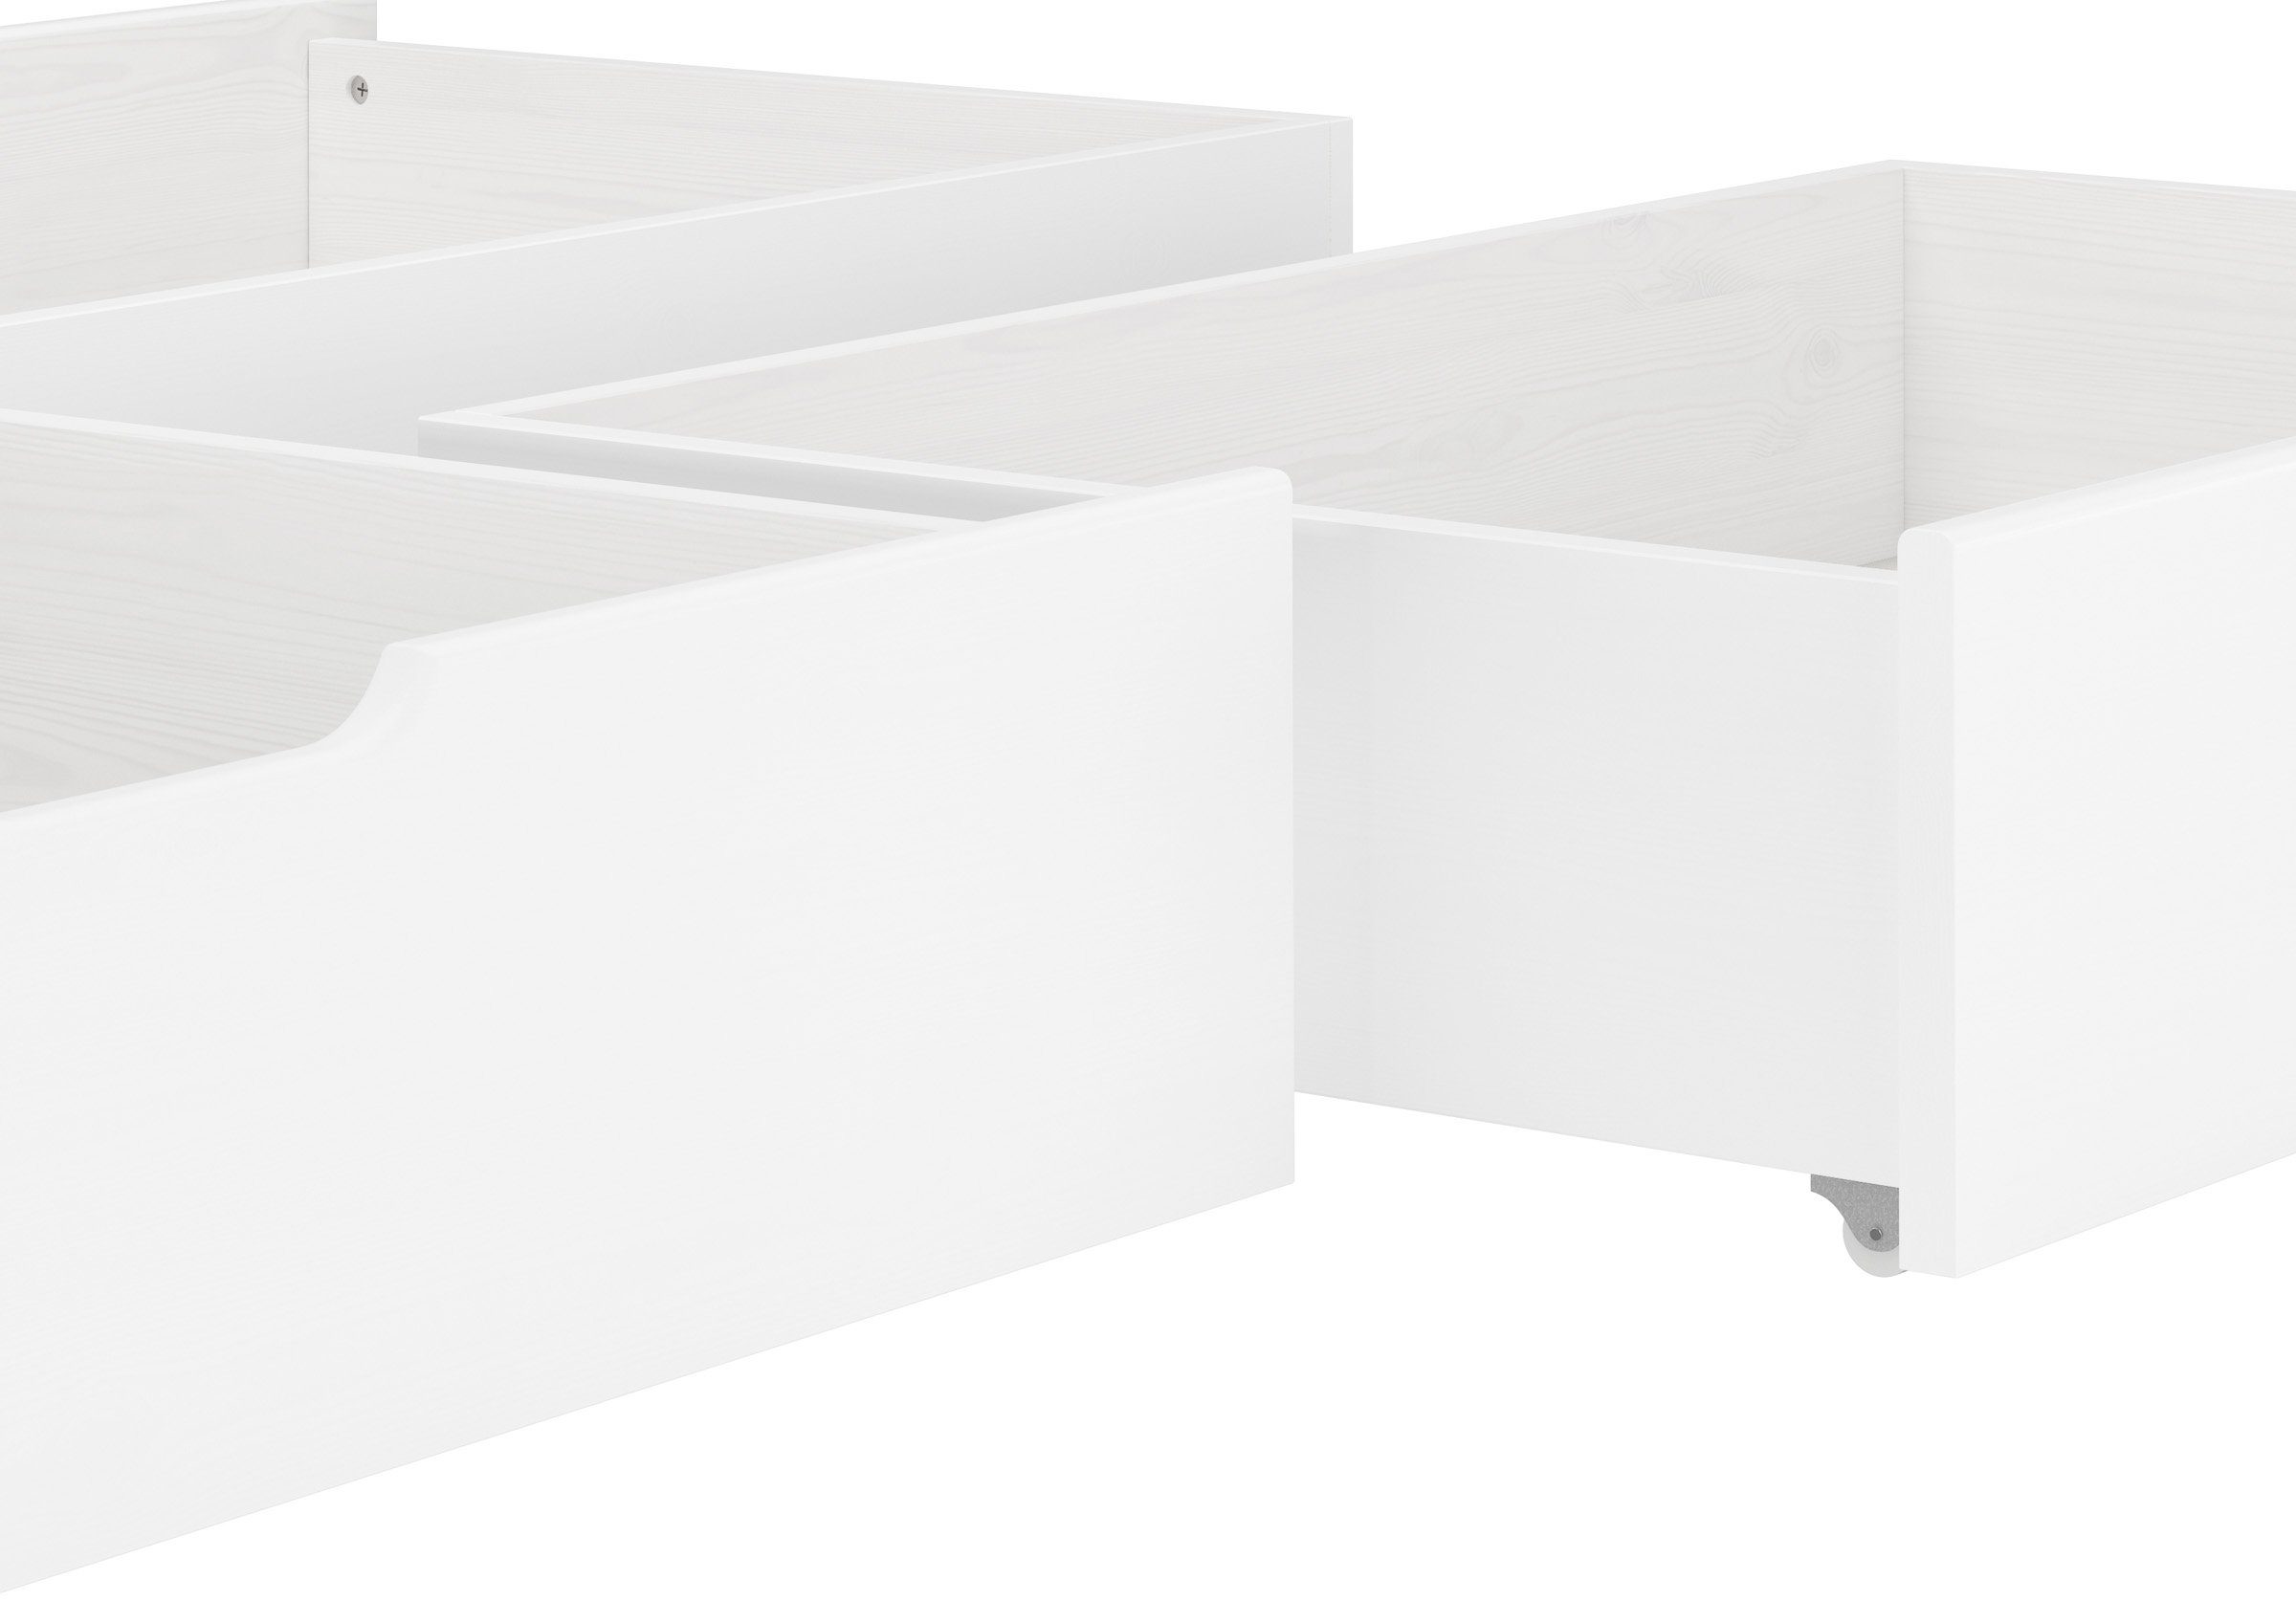 Bettkasten Doppelbetten 90.10-S3W - - Unterbettkommode weißfür 3-teilig Weiß, Doppelbetten Kiefer ERST-HOLZ - Kiefer für Bettkasten Dreiteiliger